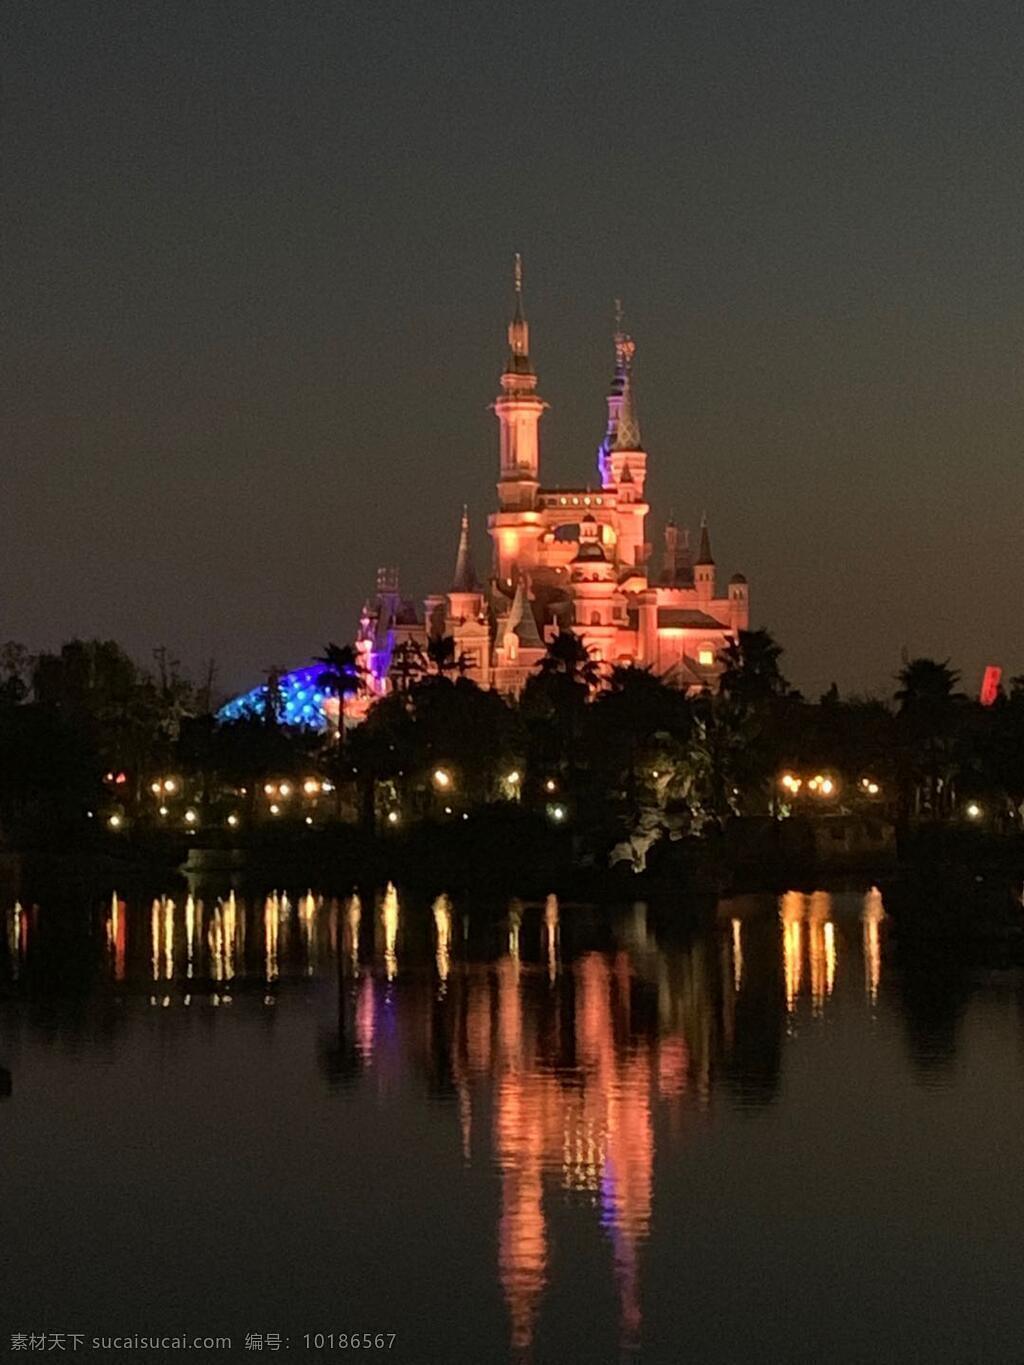 迪士尼 城堡 夜景 童话 倒影 水波 湖 儿童 自然景观 建筑景观